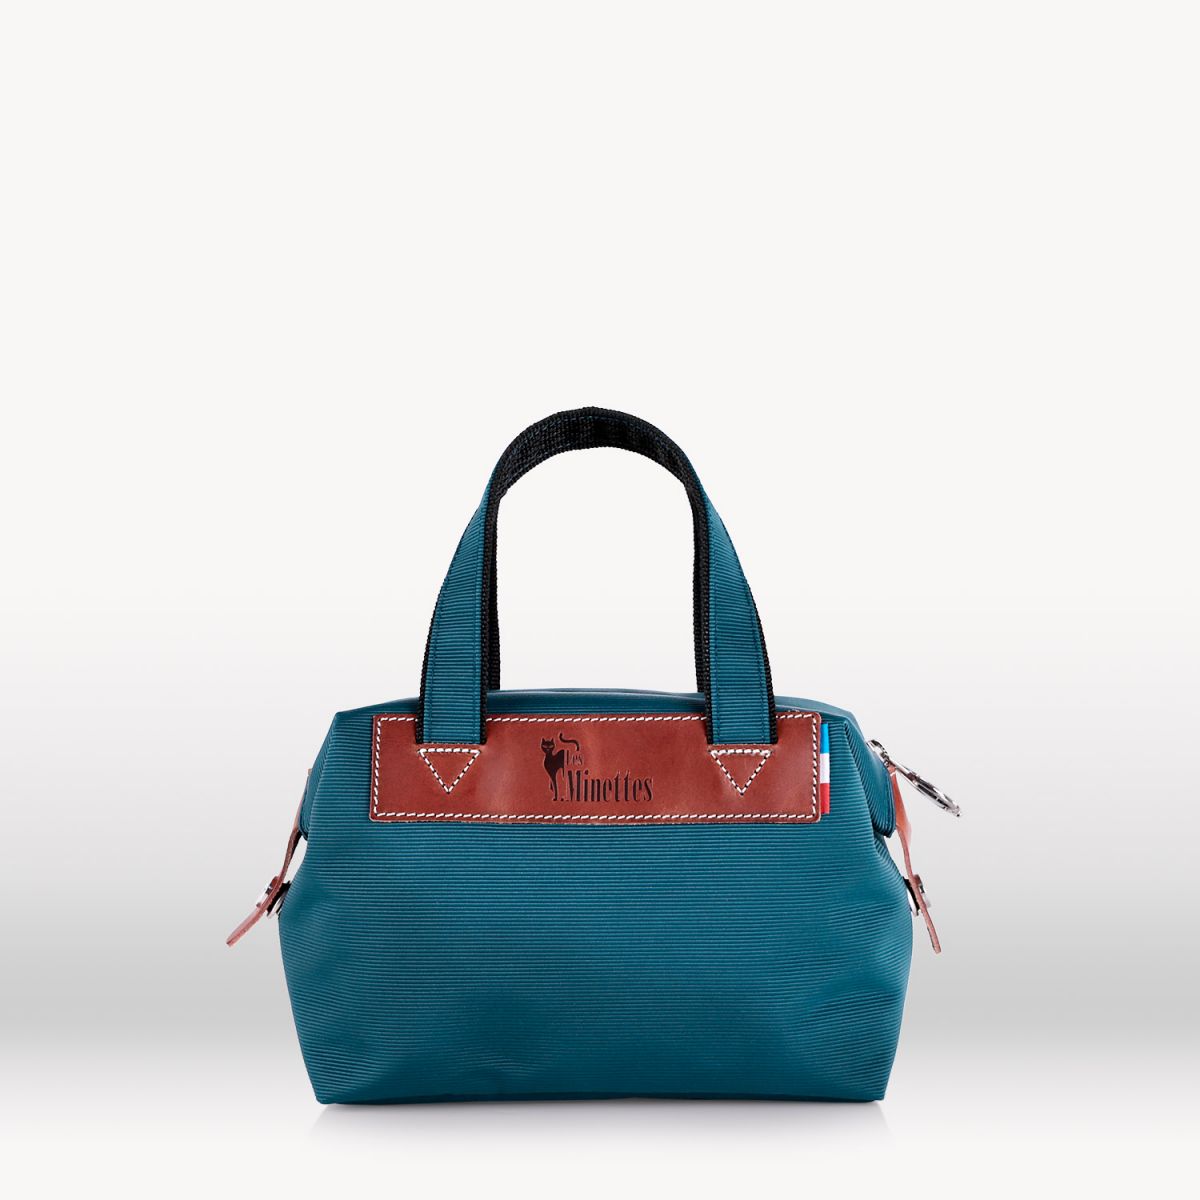 28cm handbag Thalassa blue/Tobacco